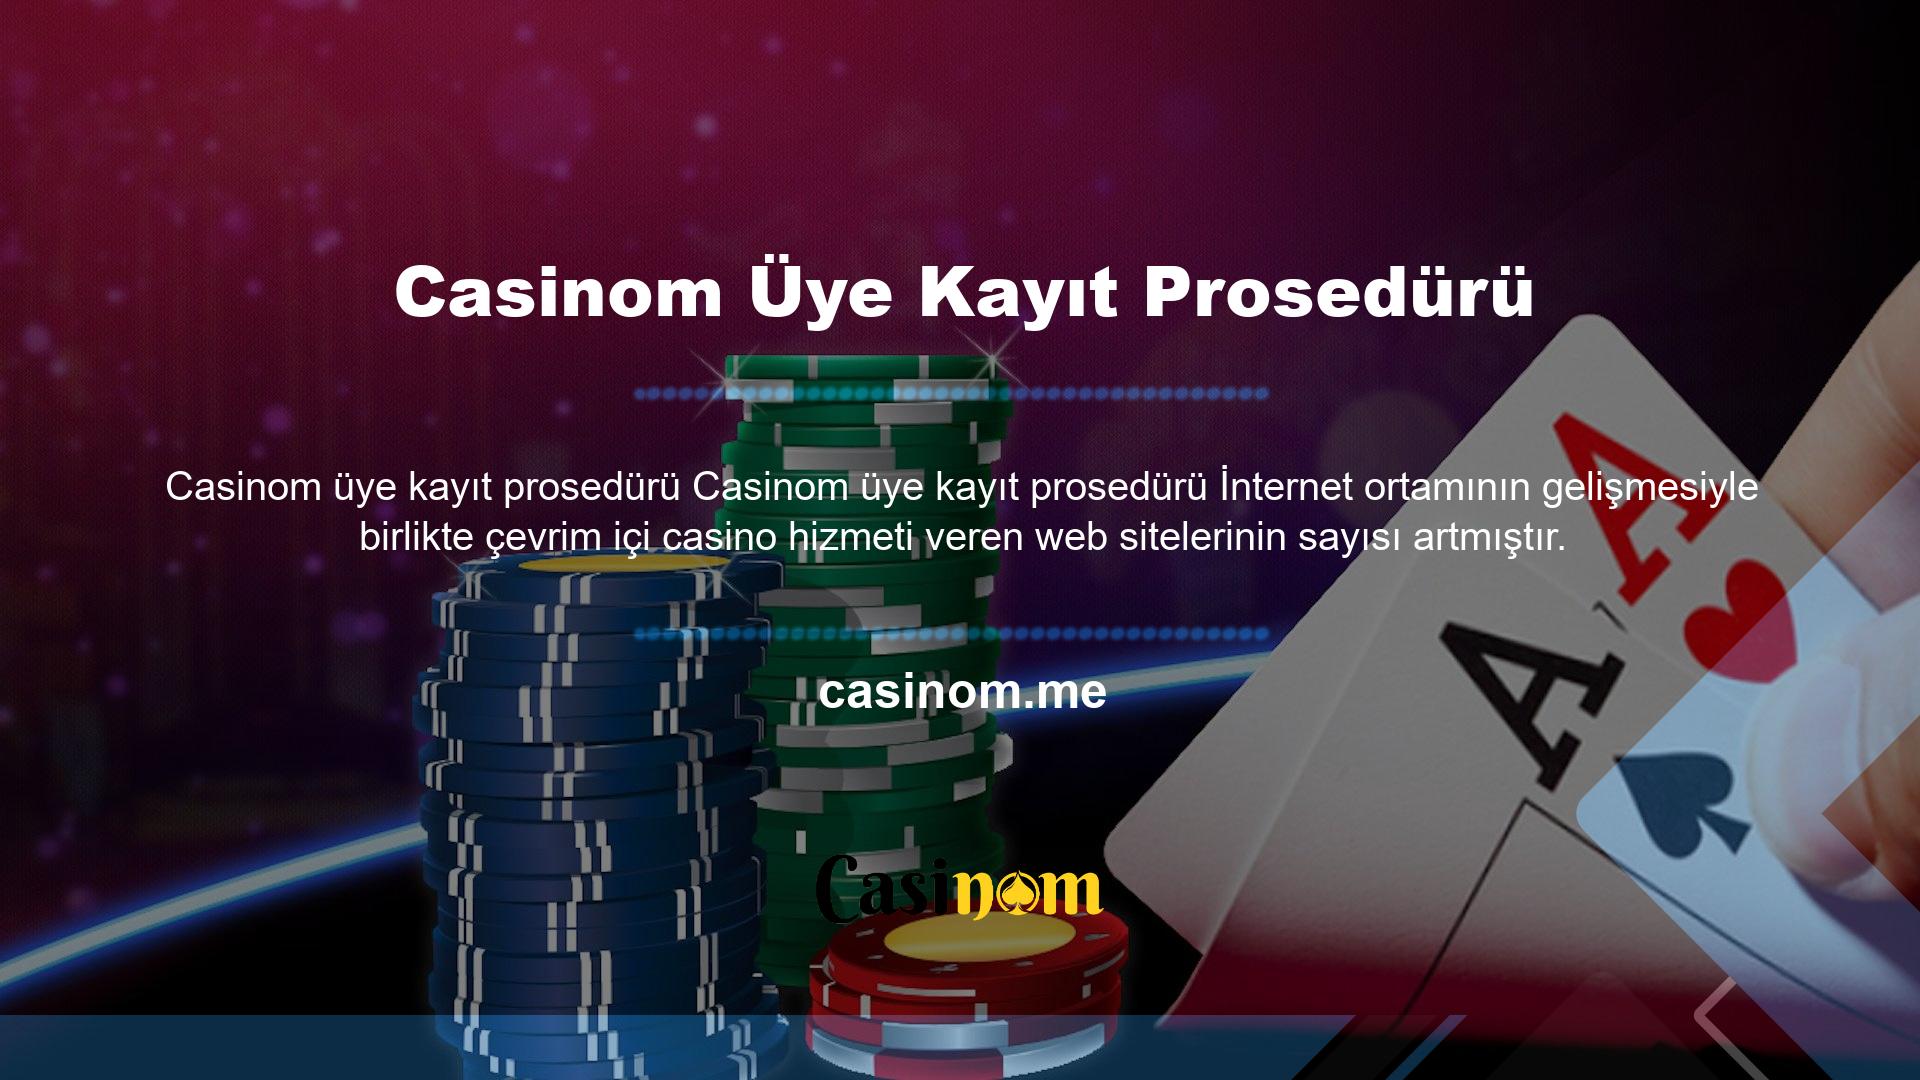 Casinom web sitesi, bahis piyasasının en iyilerinden biridir ve son birkaç gündür büyük ilgi görmektedir